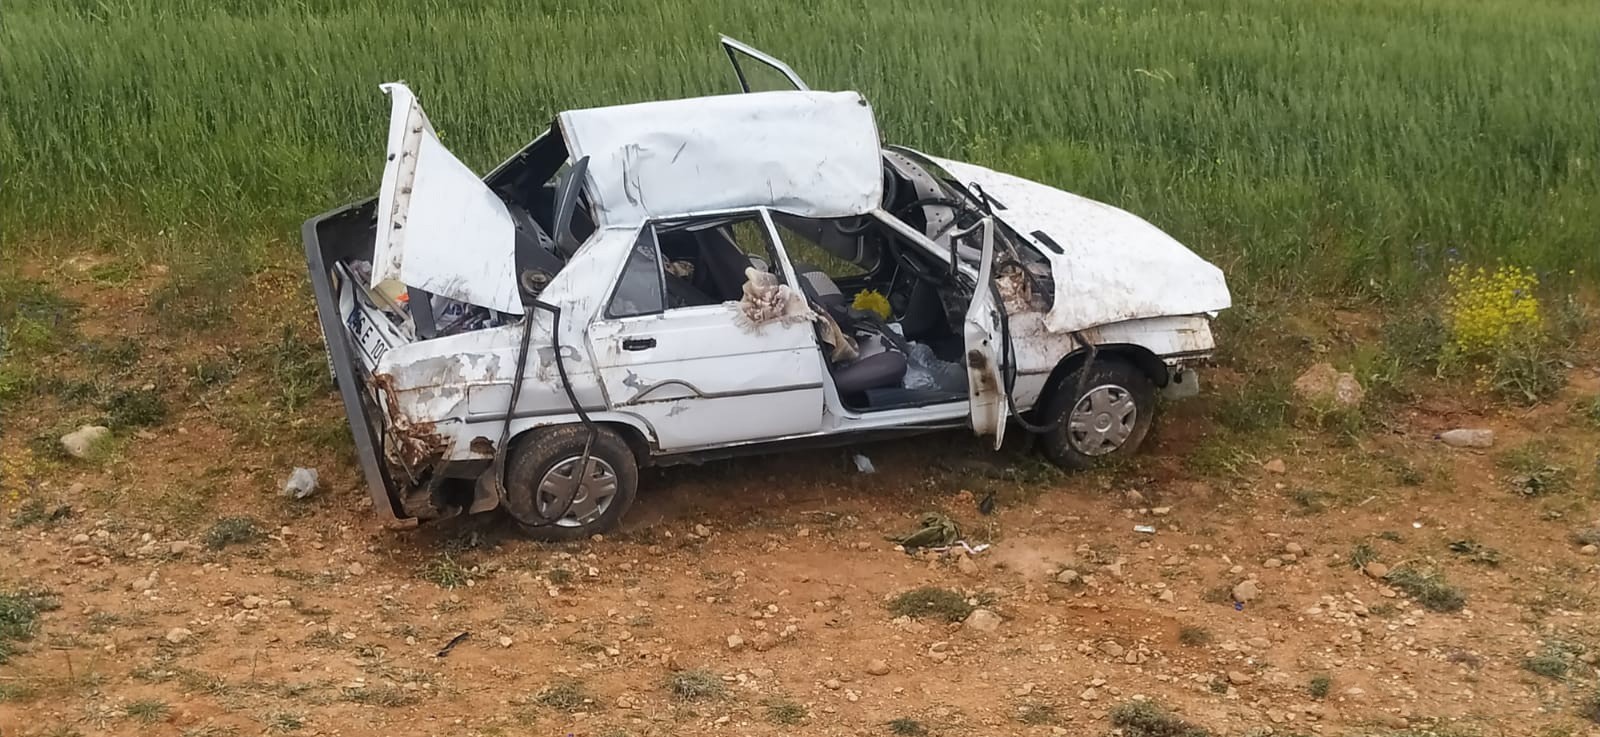 Sivas'ta direksiyon hakimiyetini kaybeden otomobil yoldan çıkarak takla attı: 1’i ağır 3 yaralı